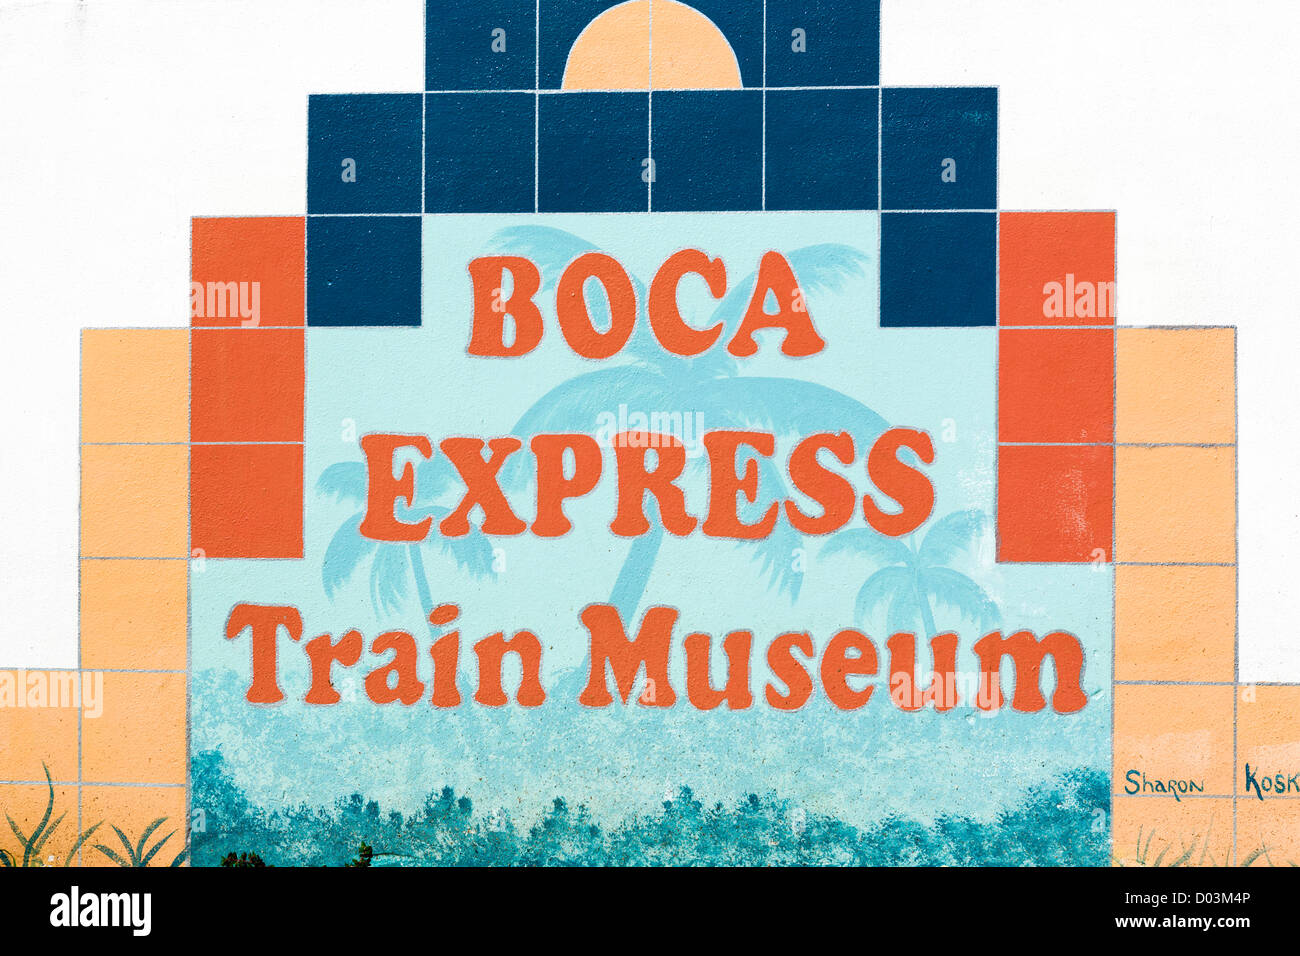 Anmeldung außerhalb der historischen Florida East Coast Railway Station, jetzt die Boca Express Train Museum, Boca Raton, Florida, USA Stockfoto